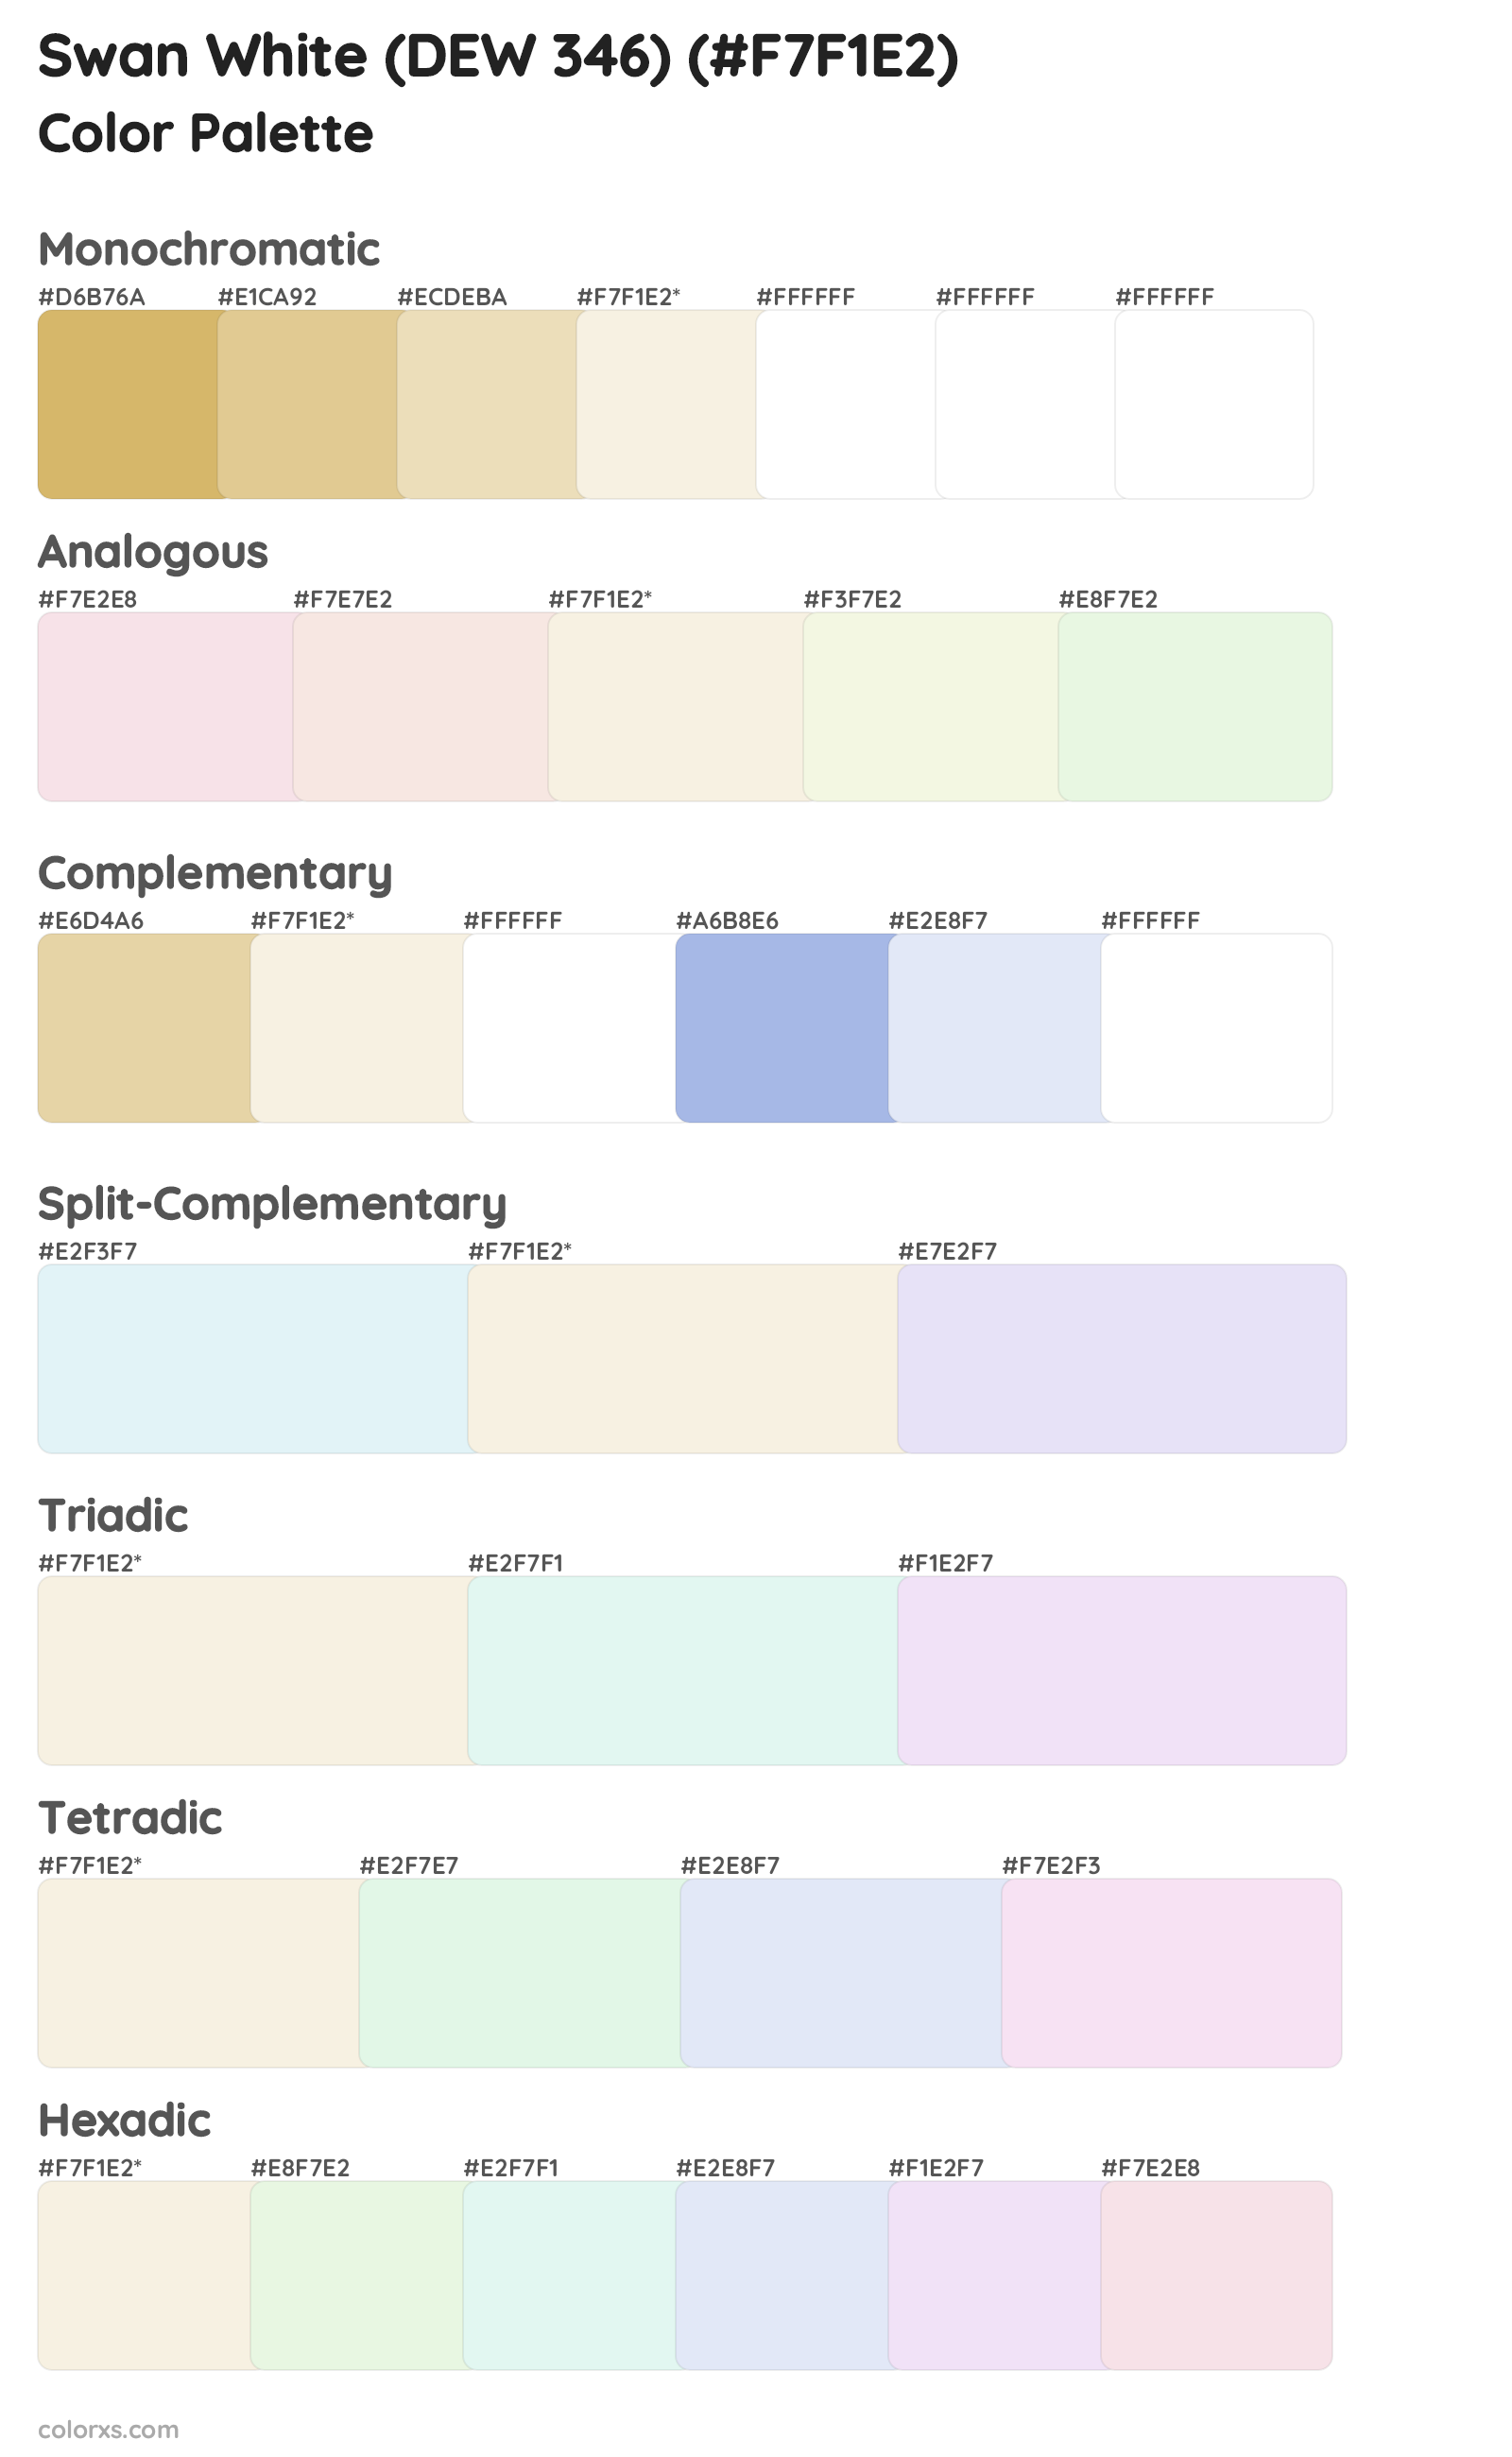 Swan White (DEW 346) Color Scheme Palettes